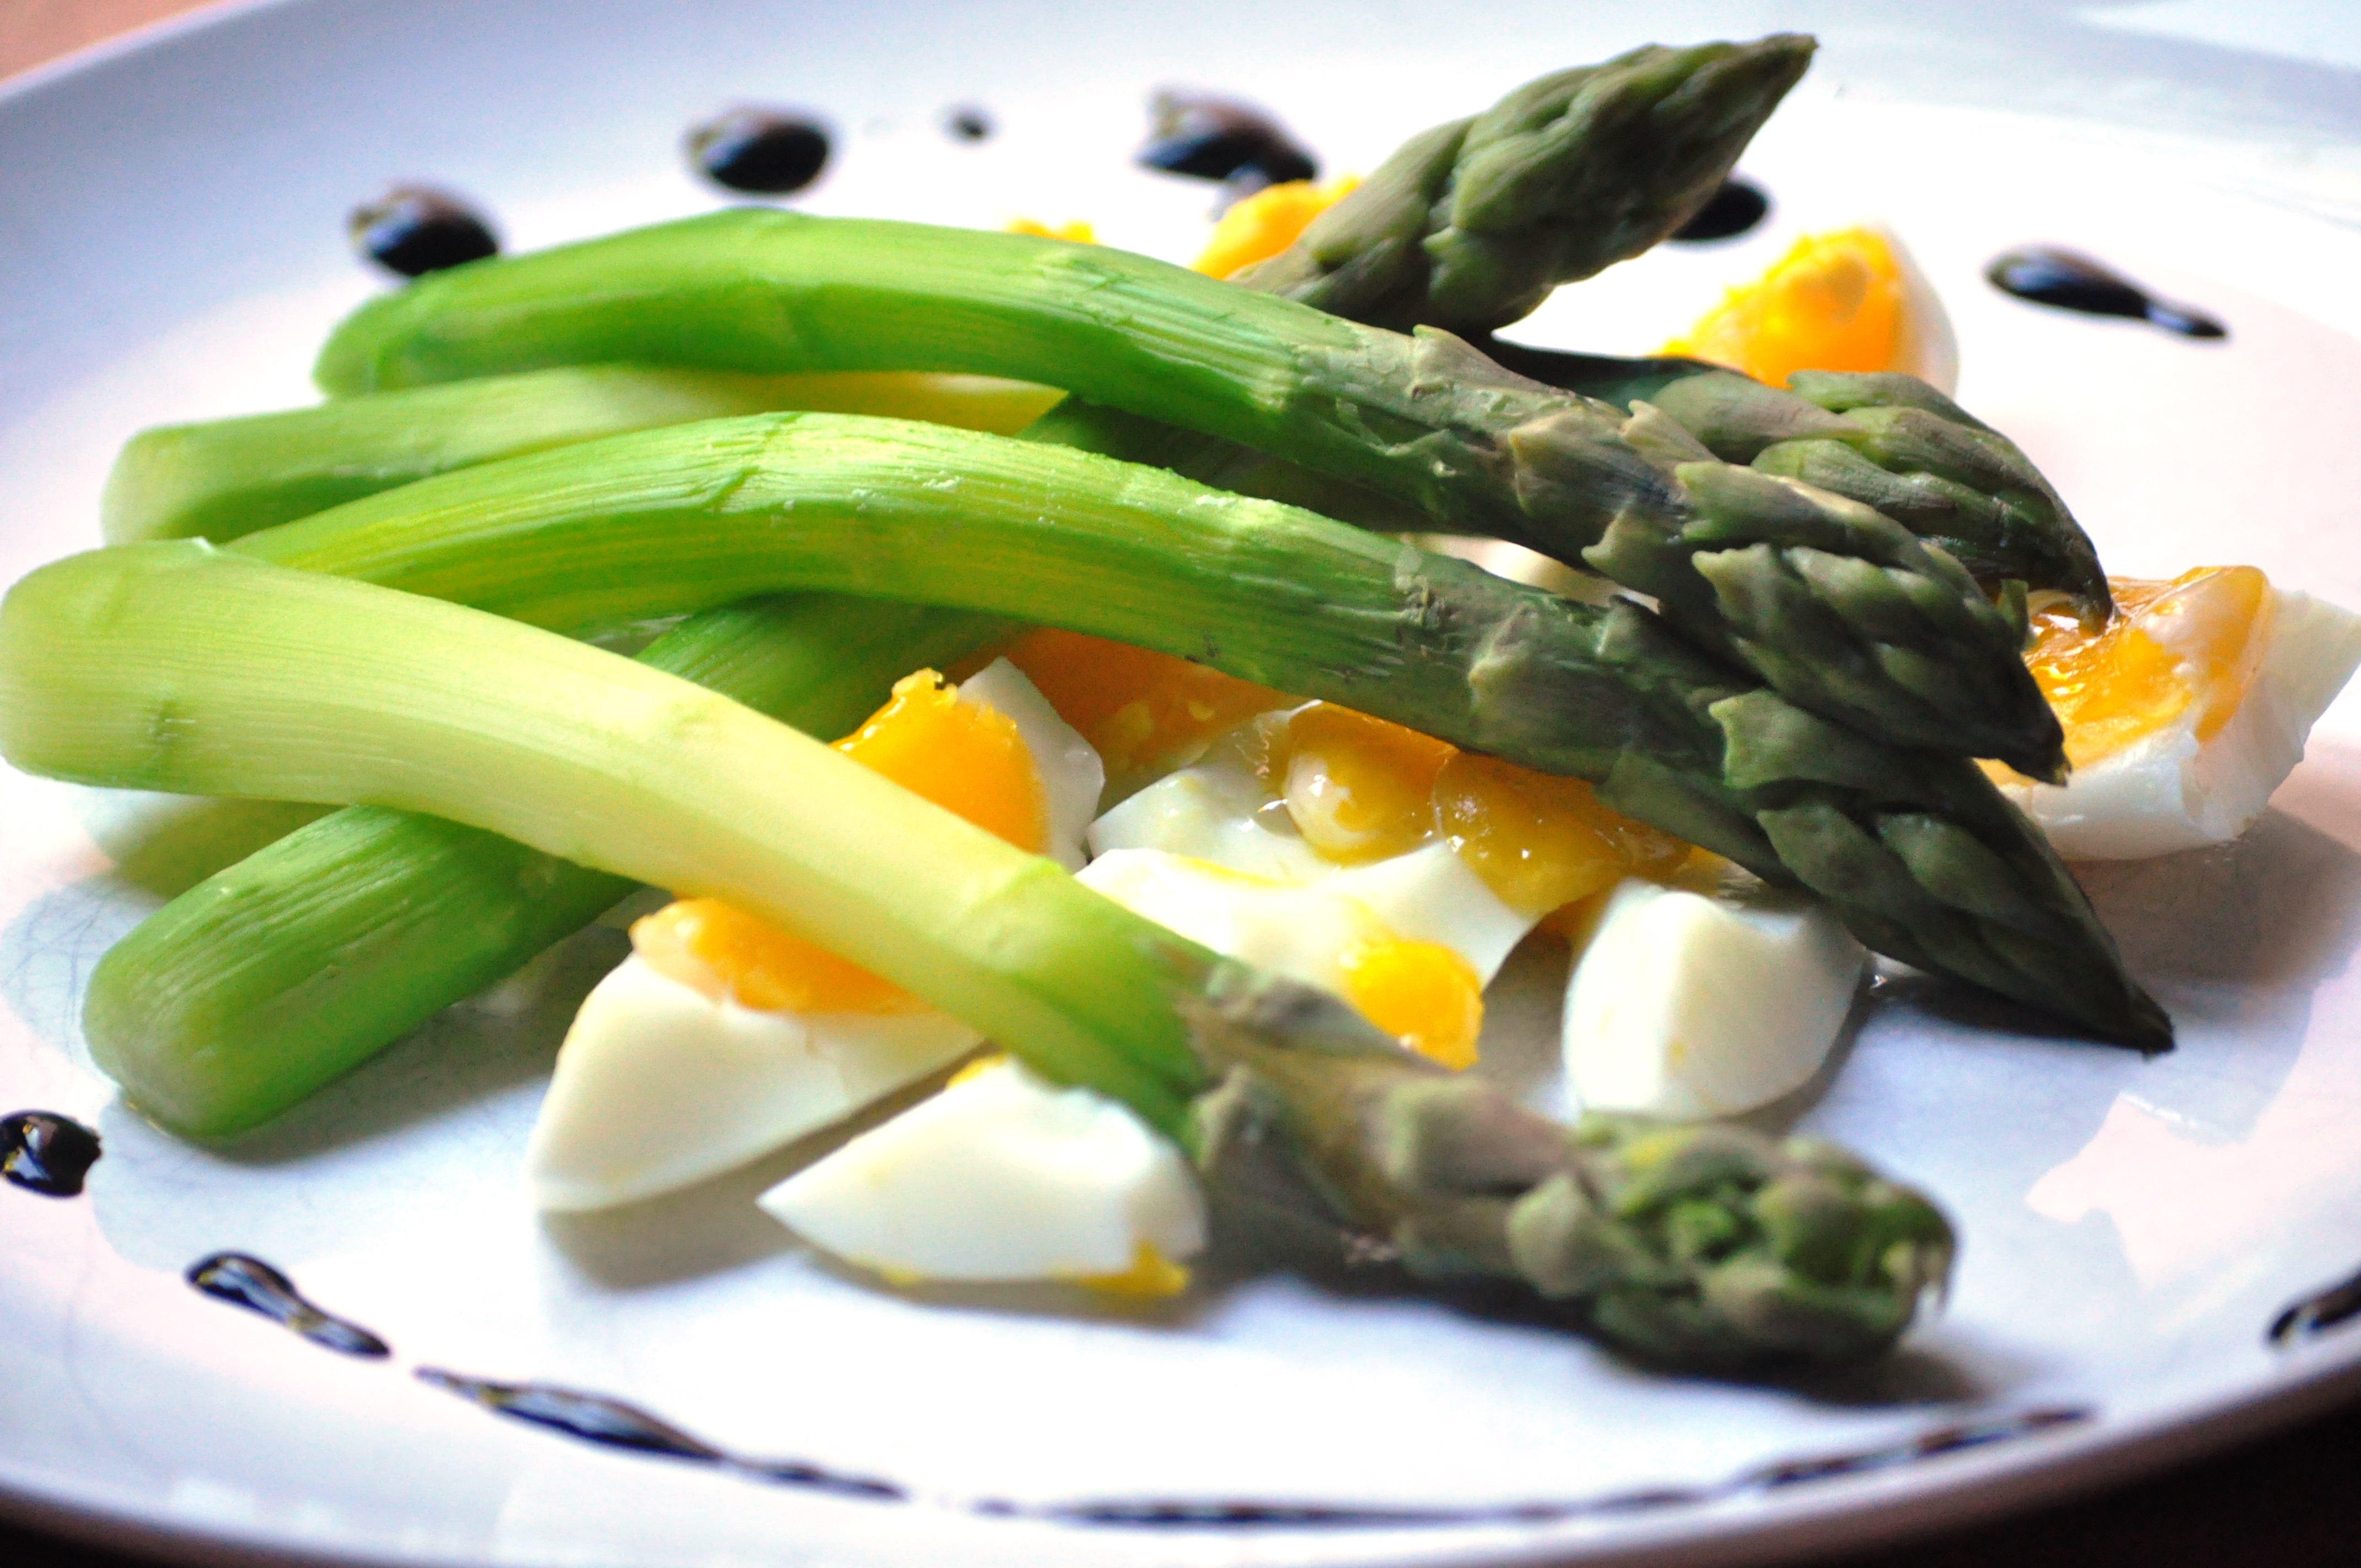 Asparagus and eggs salad